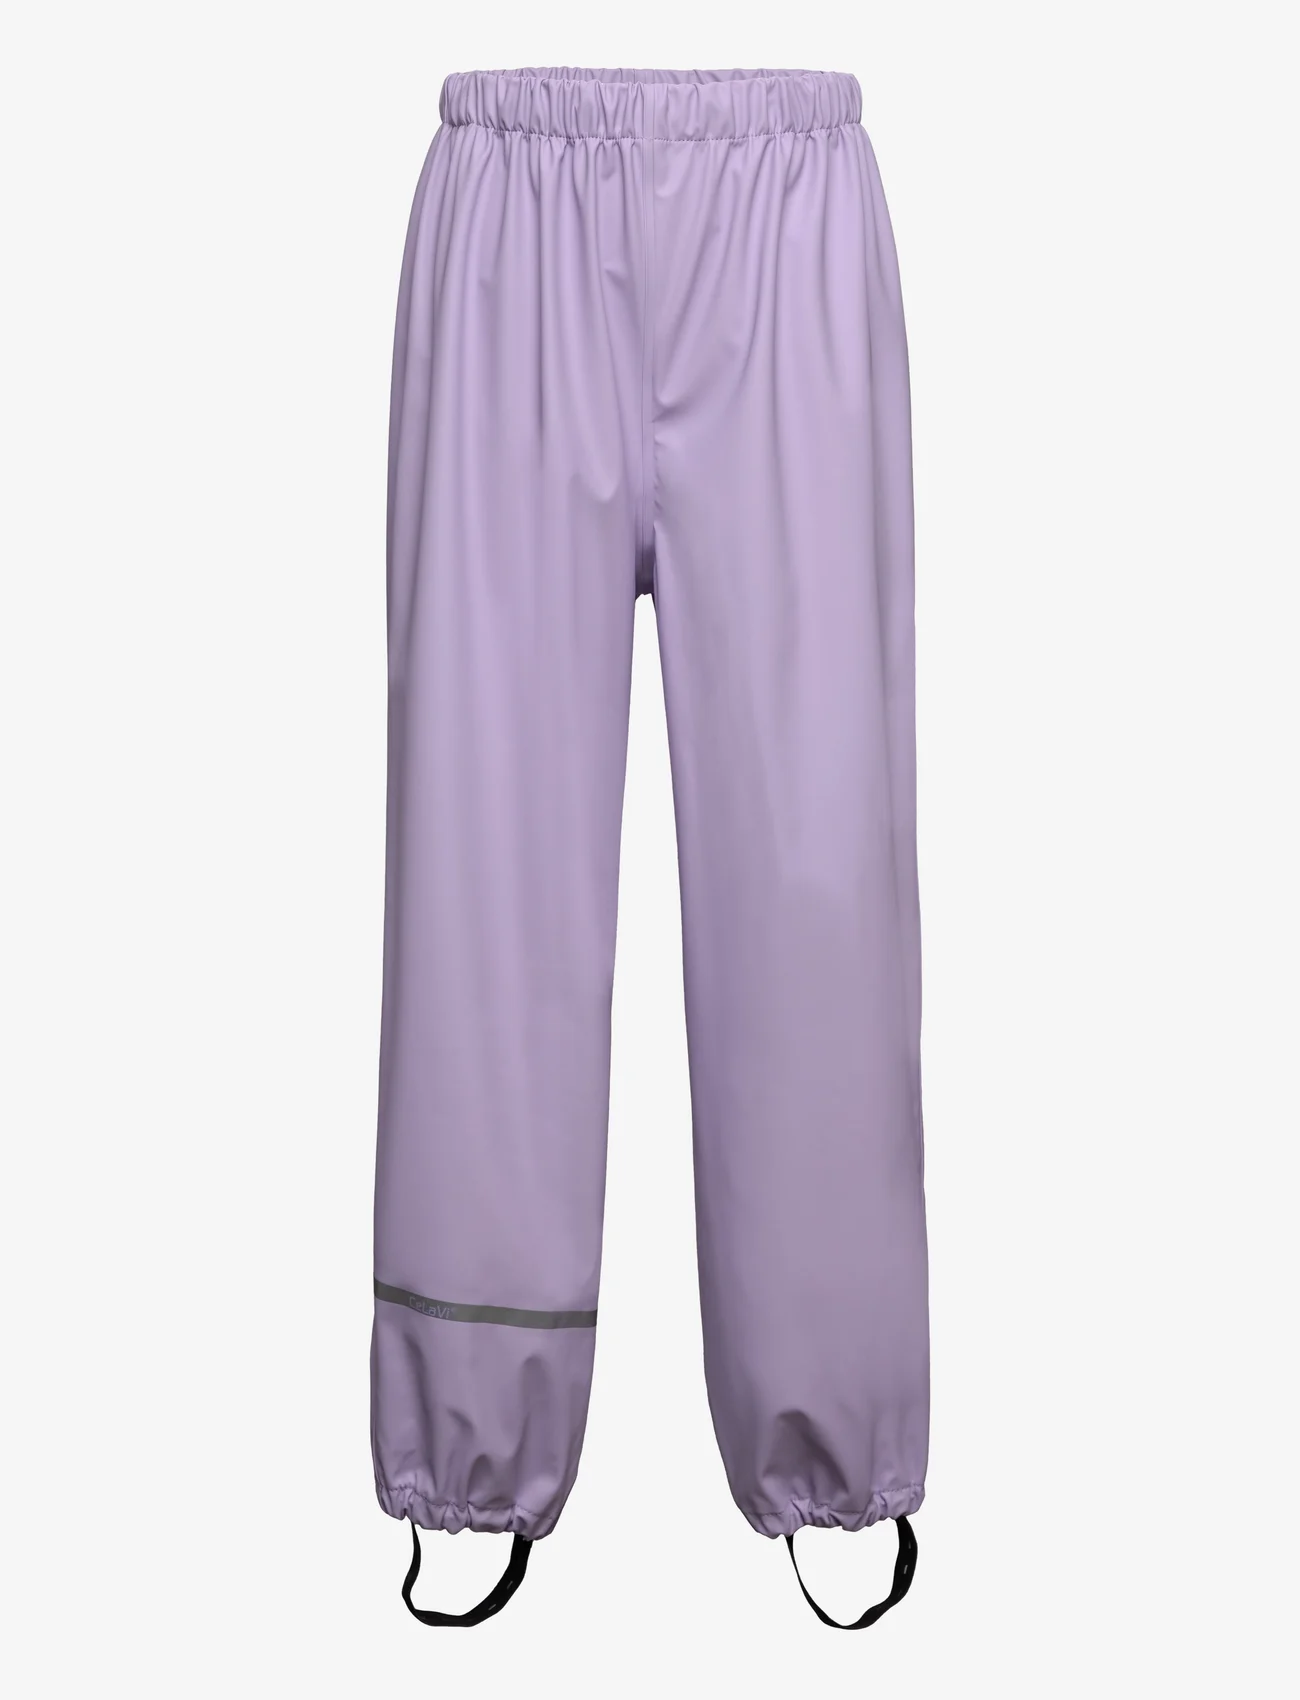 CeLaVi - Rainwear Pants - SOLID - alhaisimmat hinnat - purple rose - 0